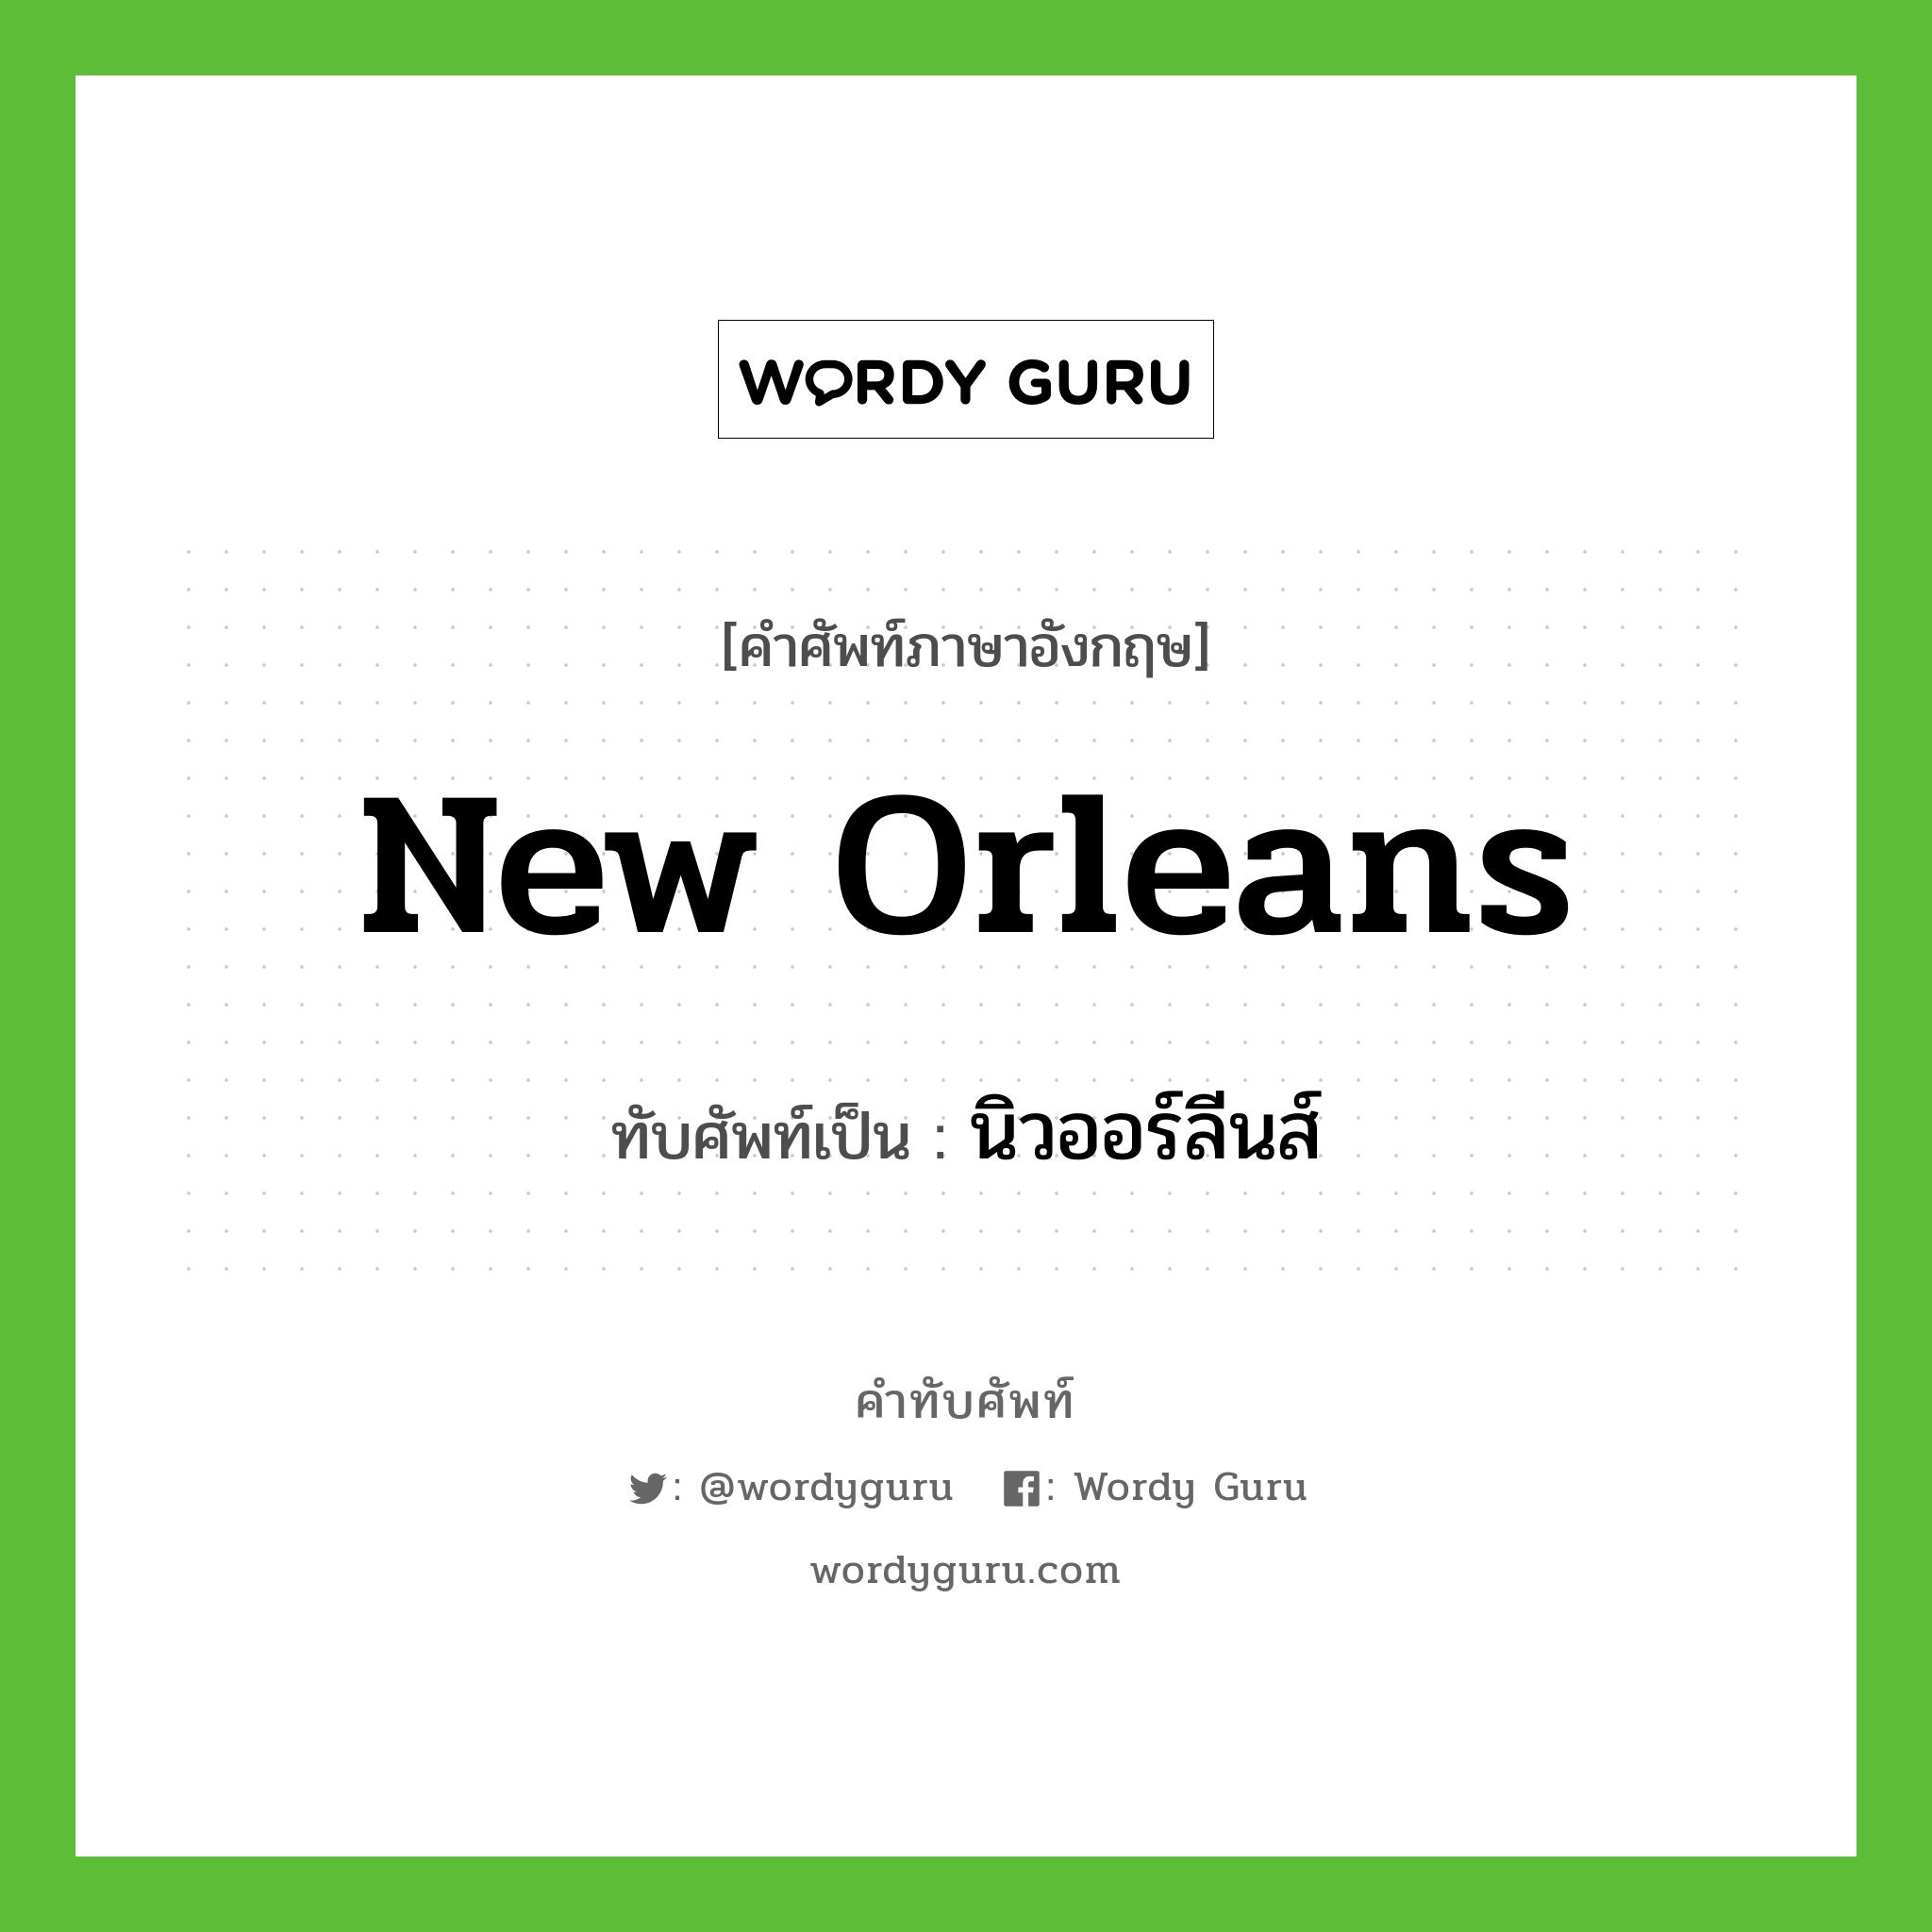 New Orleans เขียนเป็นคำไทยว่าอะไร?, คำศัพท์ภาษาอังกฤษ New Orleans ทับศัพท์เป็น นิวออร์ลีนส์